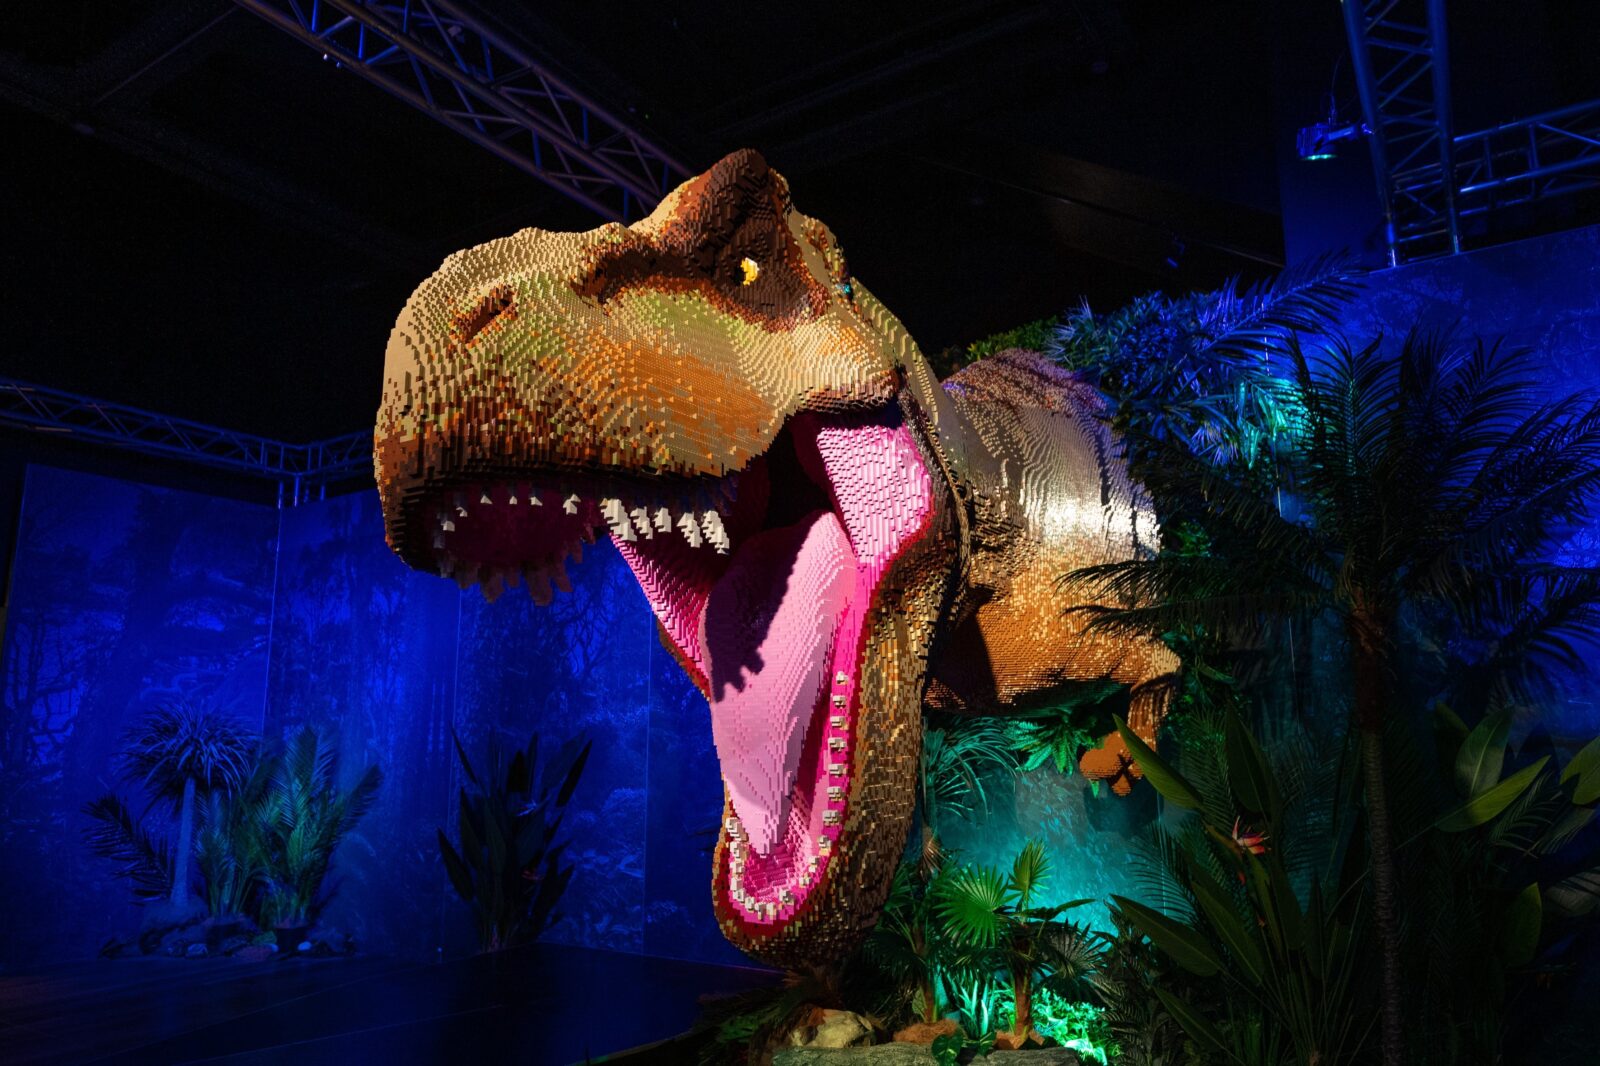 T-rex dinosaur made of LEGO bricks